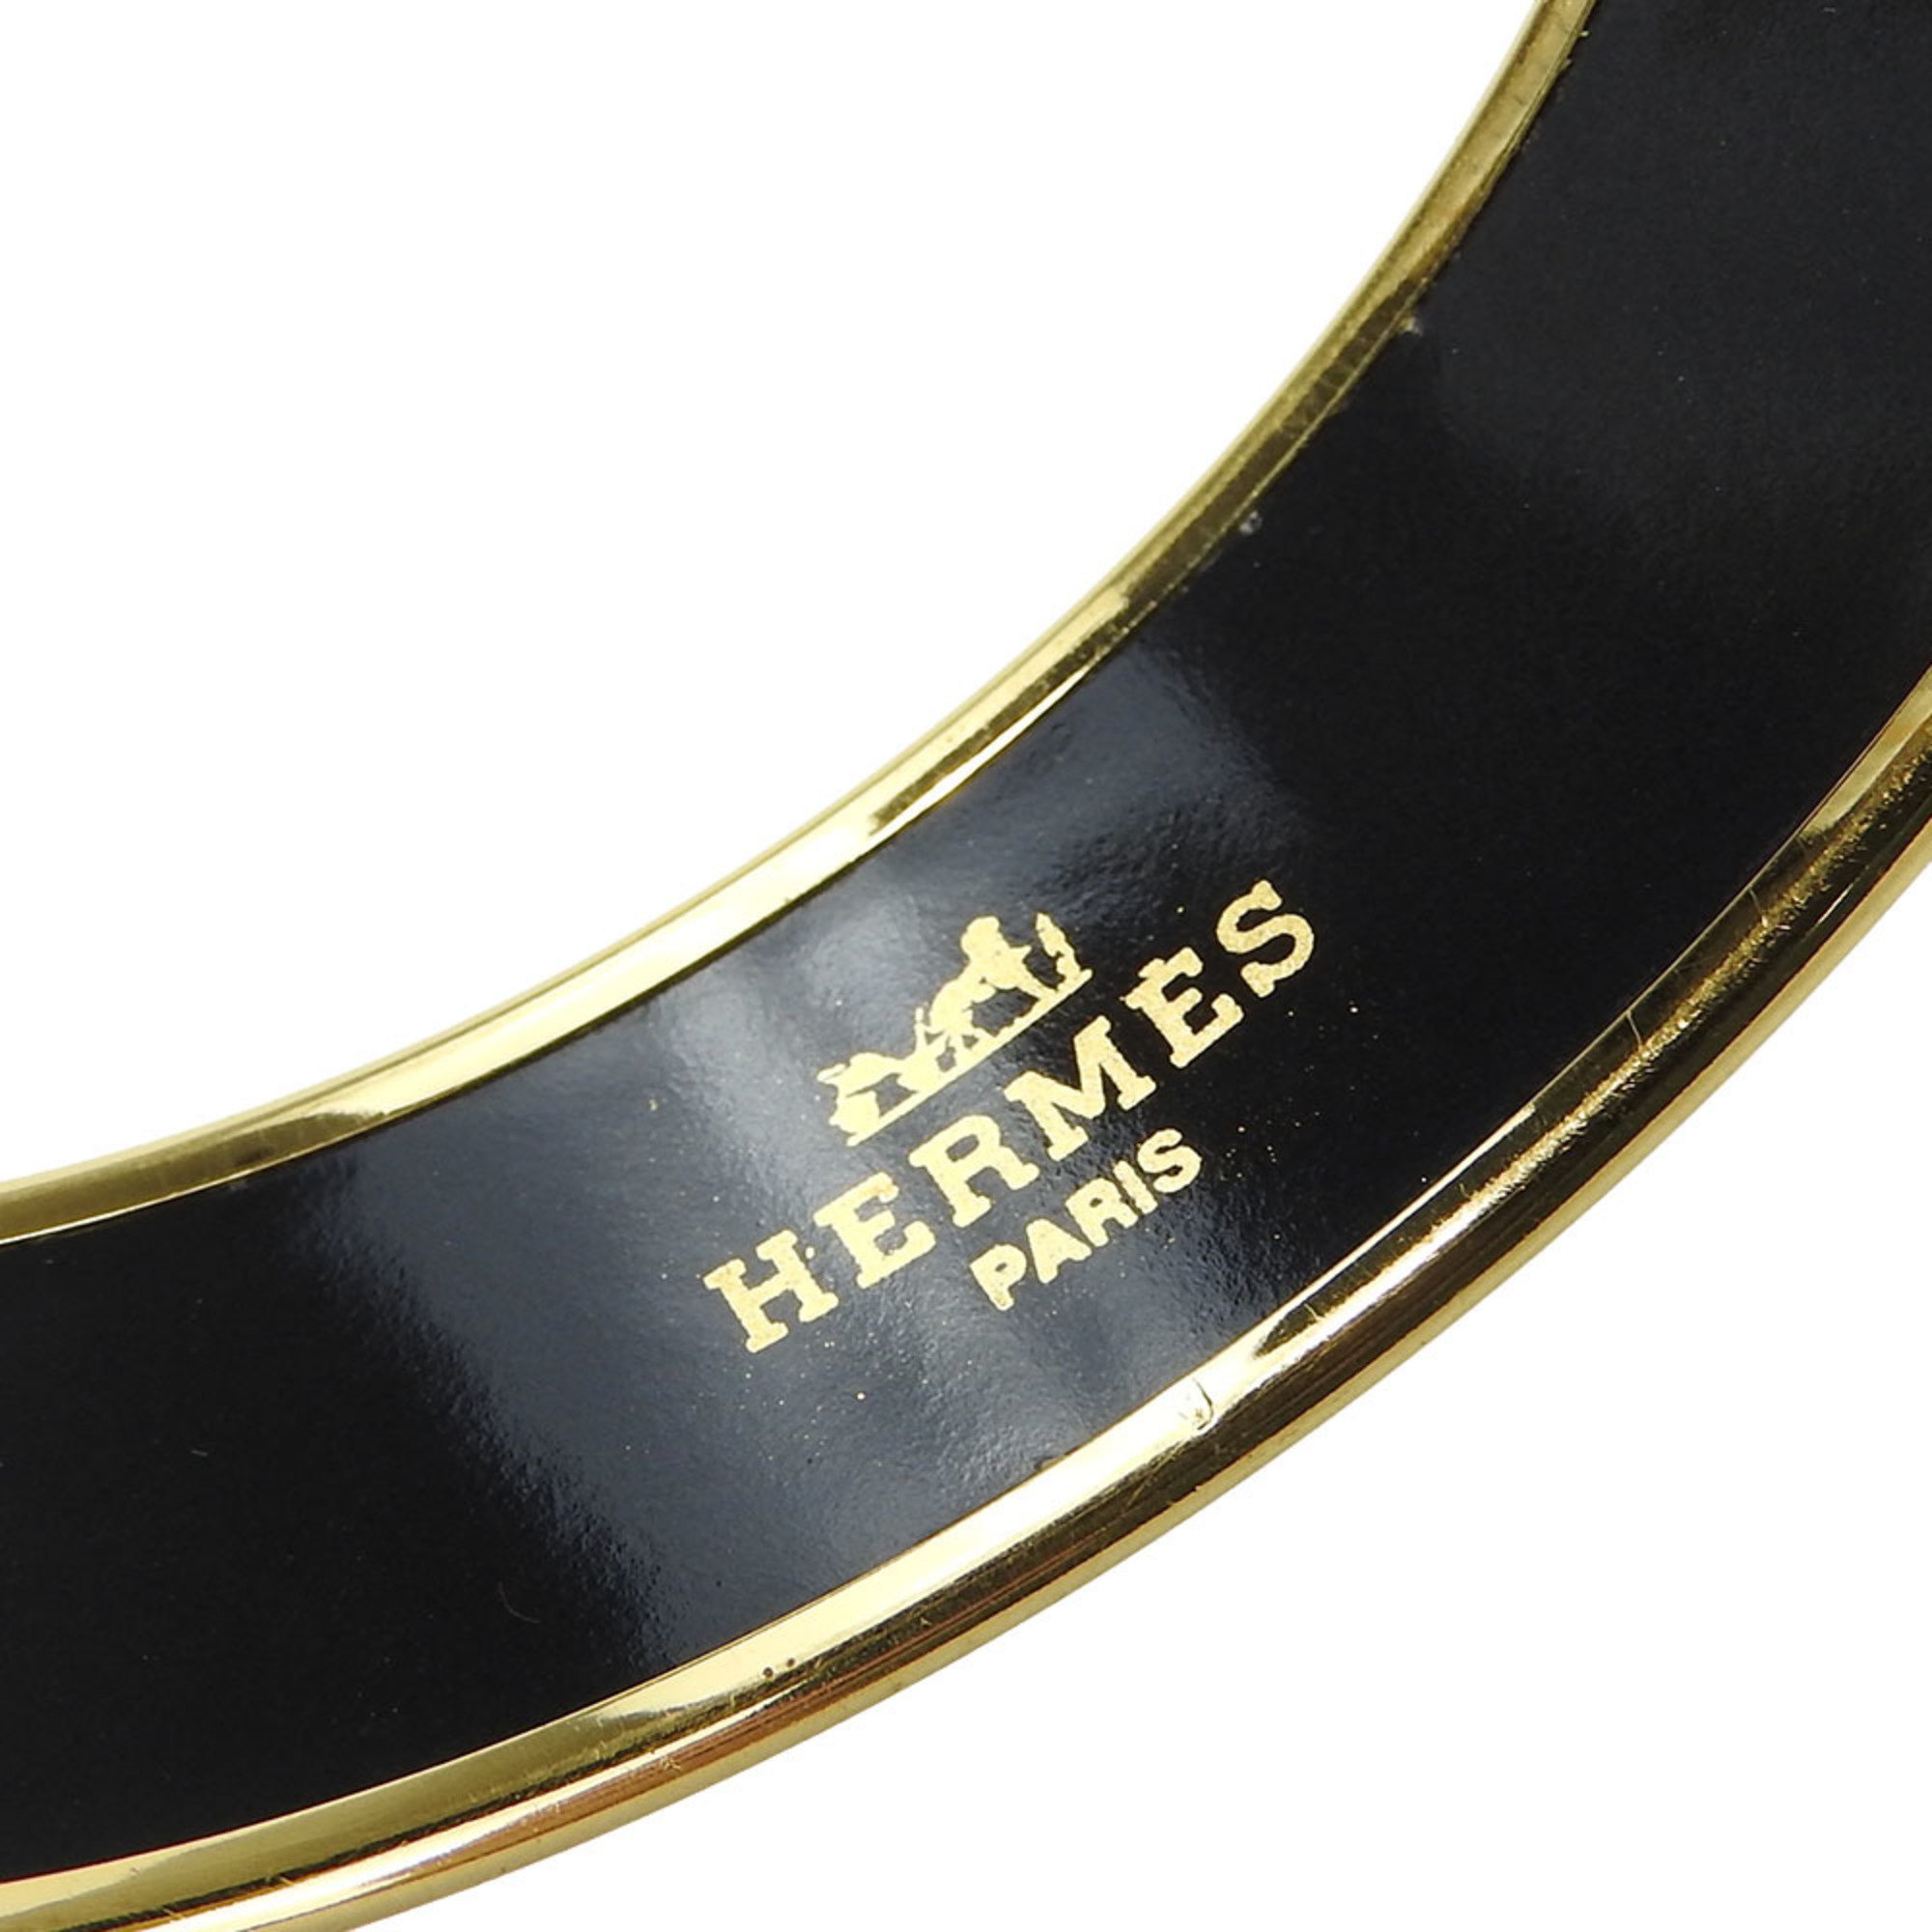 Hermes bracelet enamel GM metal cloisonné multicolor black pink drum accessory women's HERMES